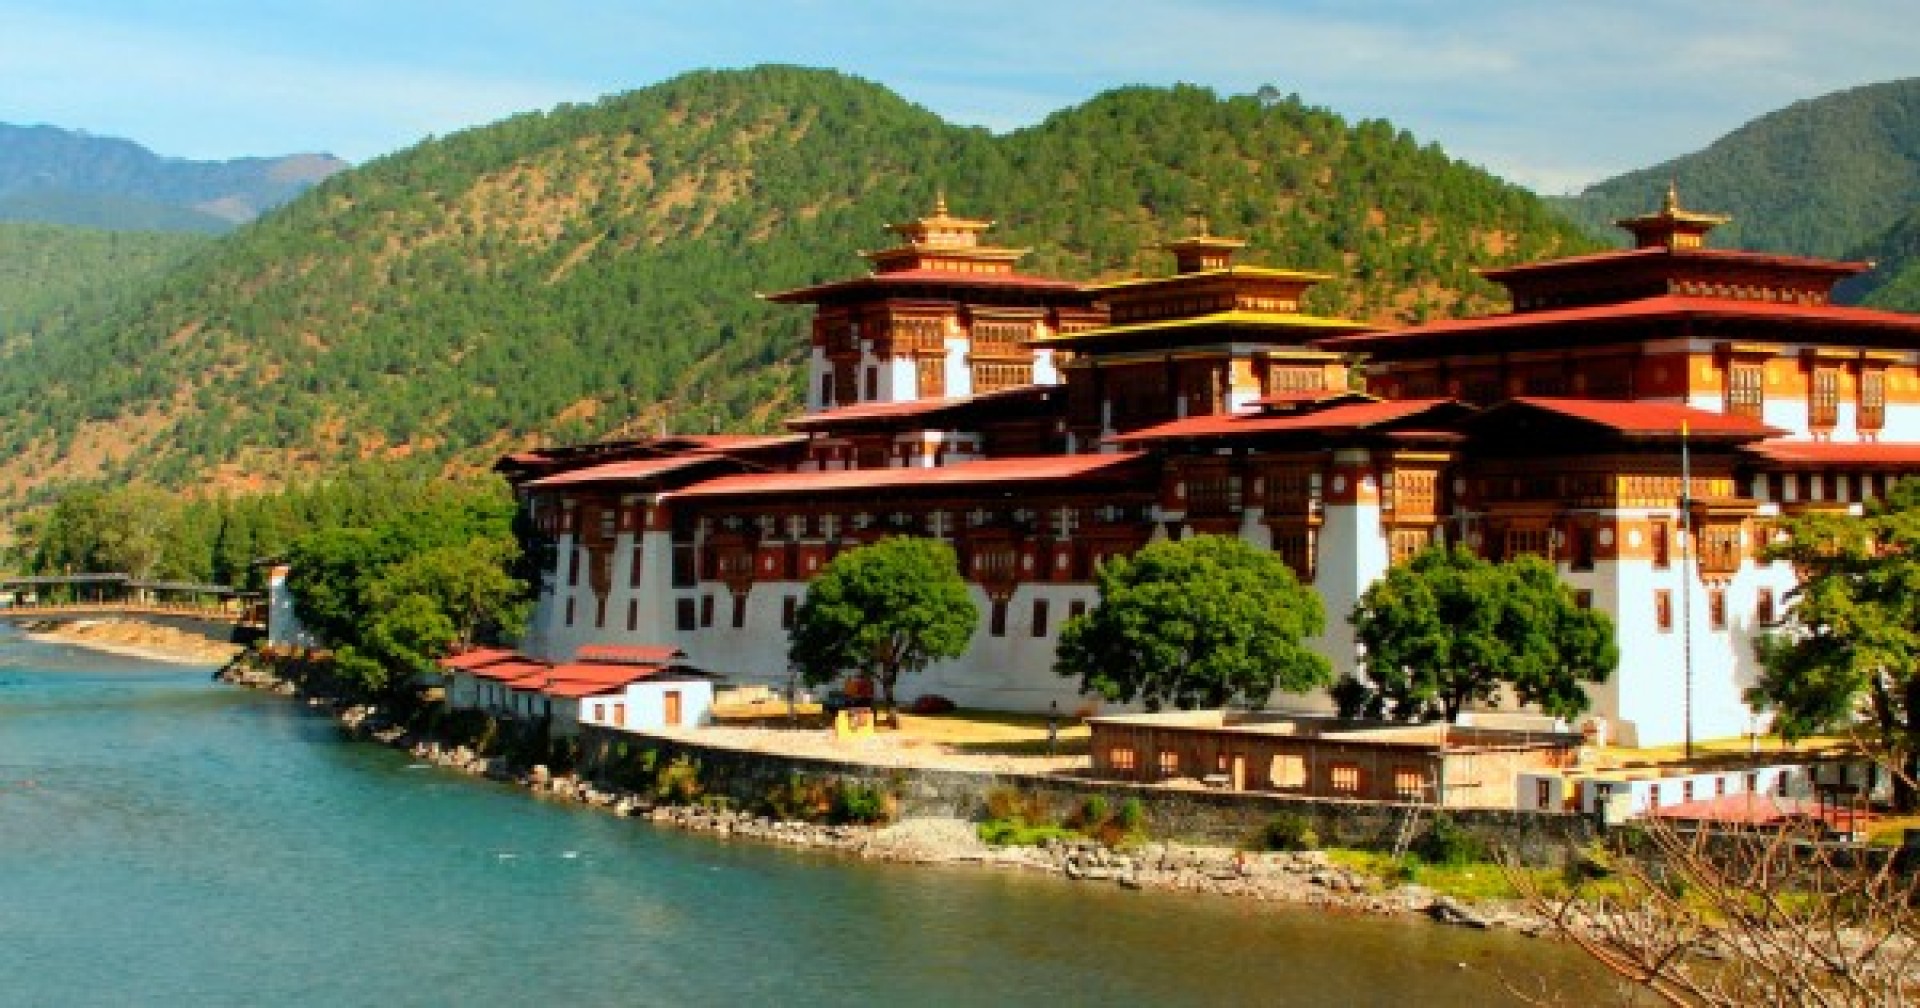 15 "đặc sản" chỉ có ở Bhutan - Quốc gia hạnh phúc nhất thế giới